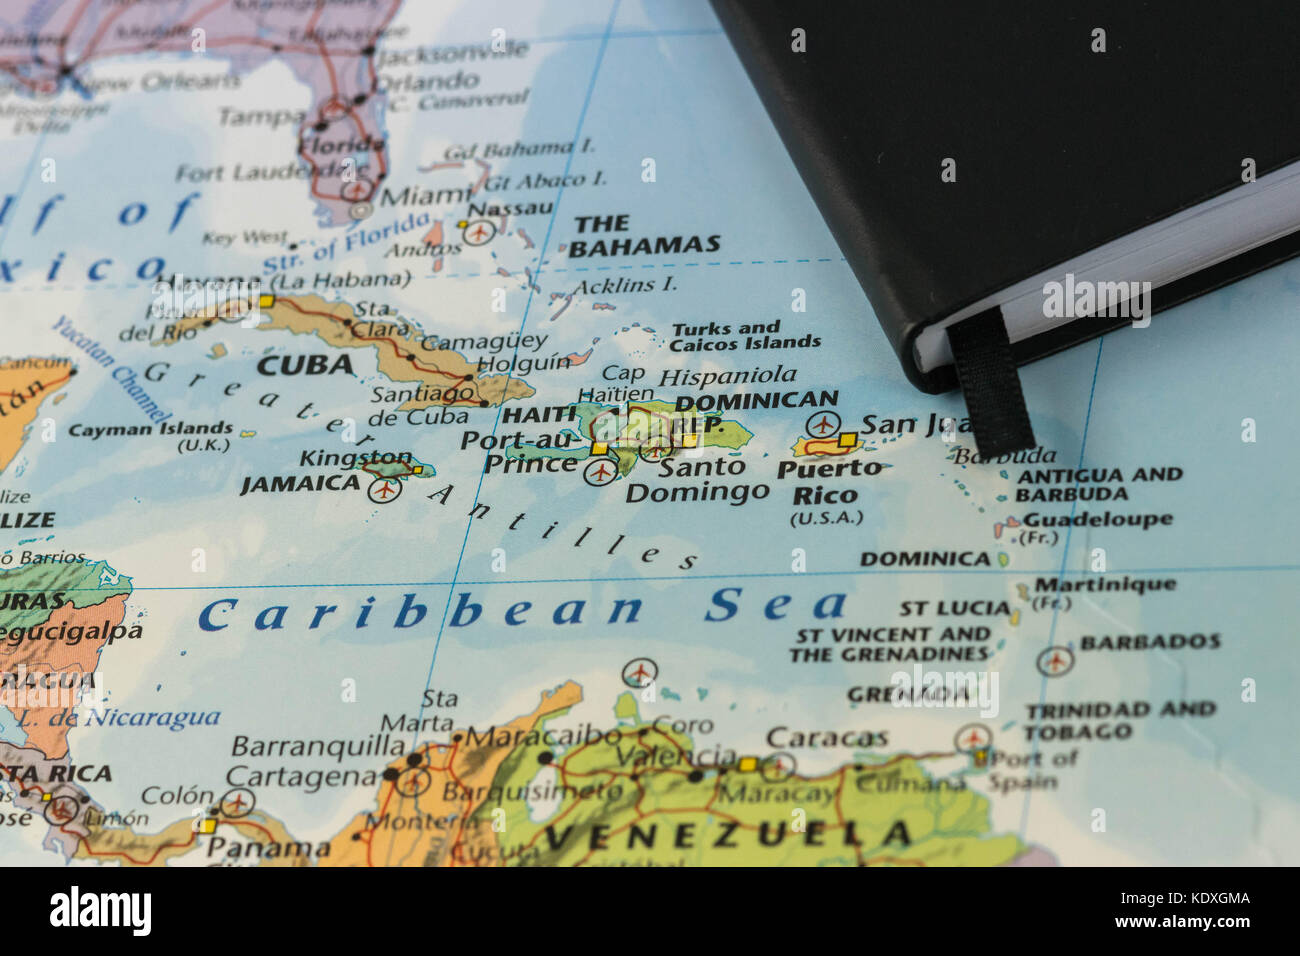 Notes personnelles d'une personne à la planification d'un voyage à la mer des caraïbes sur une libre Carte de Cuba, Haïti, Jamaïque, République dominicaine, les Bahamas et puertorico Banque D'Images